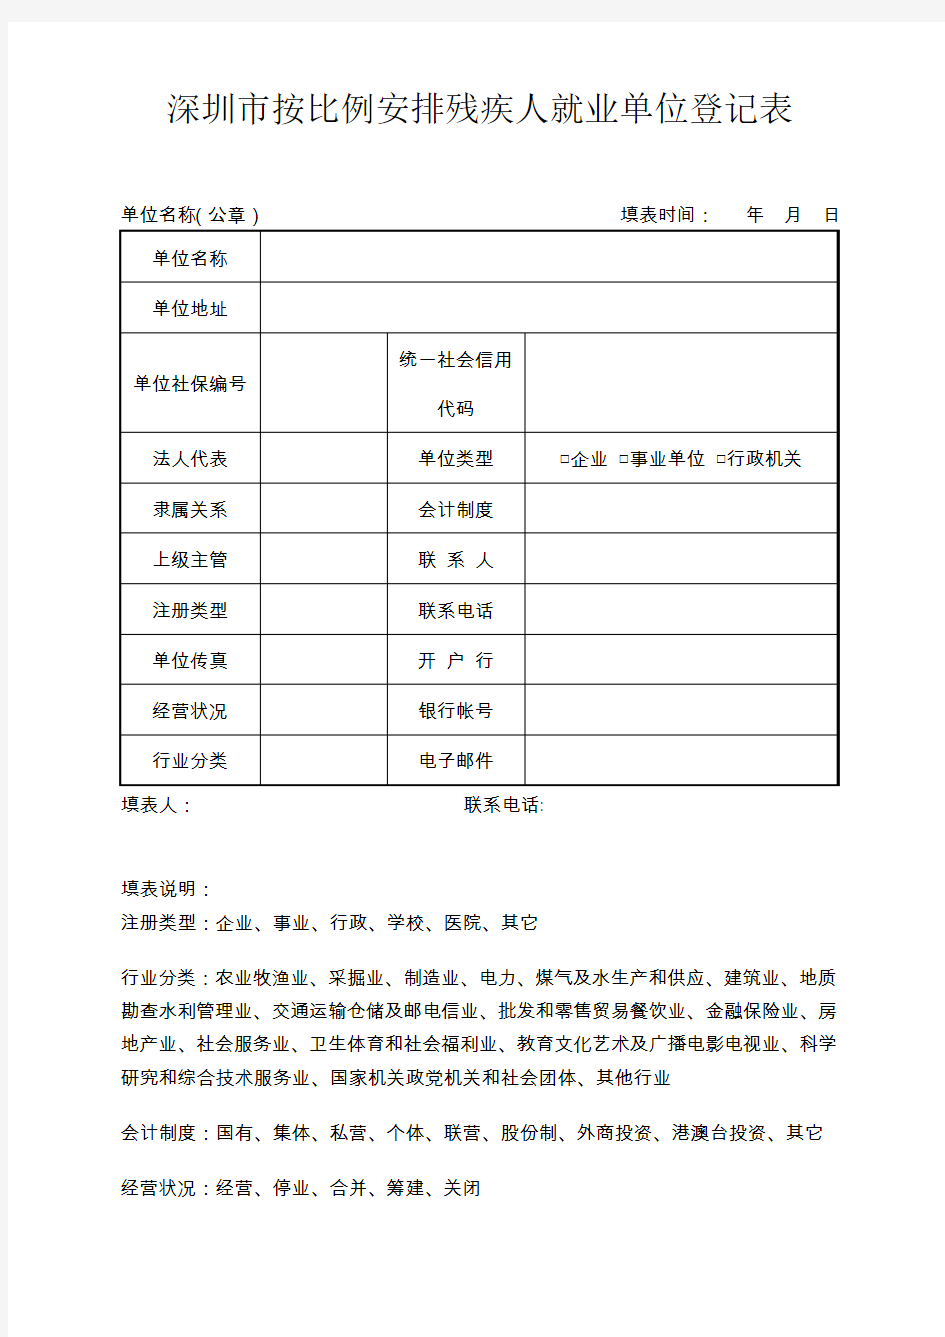 深圳市按比例安排残疾人就业单位登记表